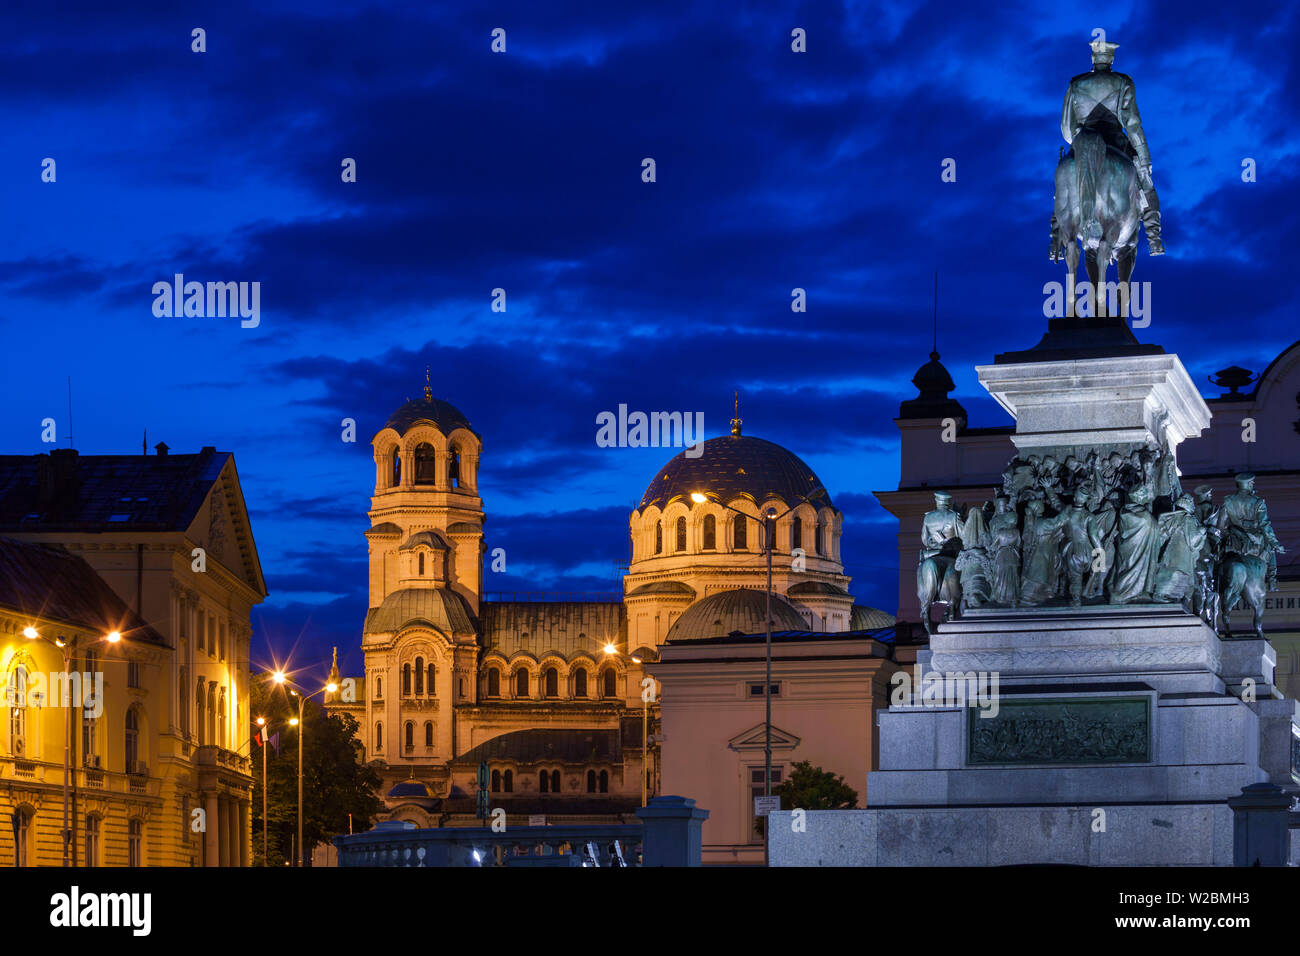 La Bulgaria, Sofia, Ploshtad Alexander Nevski Square, Aleksander Nevski chiesa con il monumento a zar russo Alessandro II, liberatore di Bulgaria, alba Foto Stock